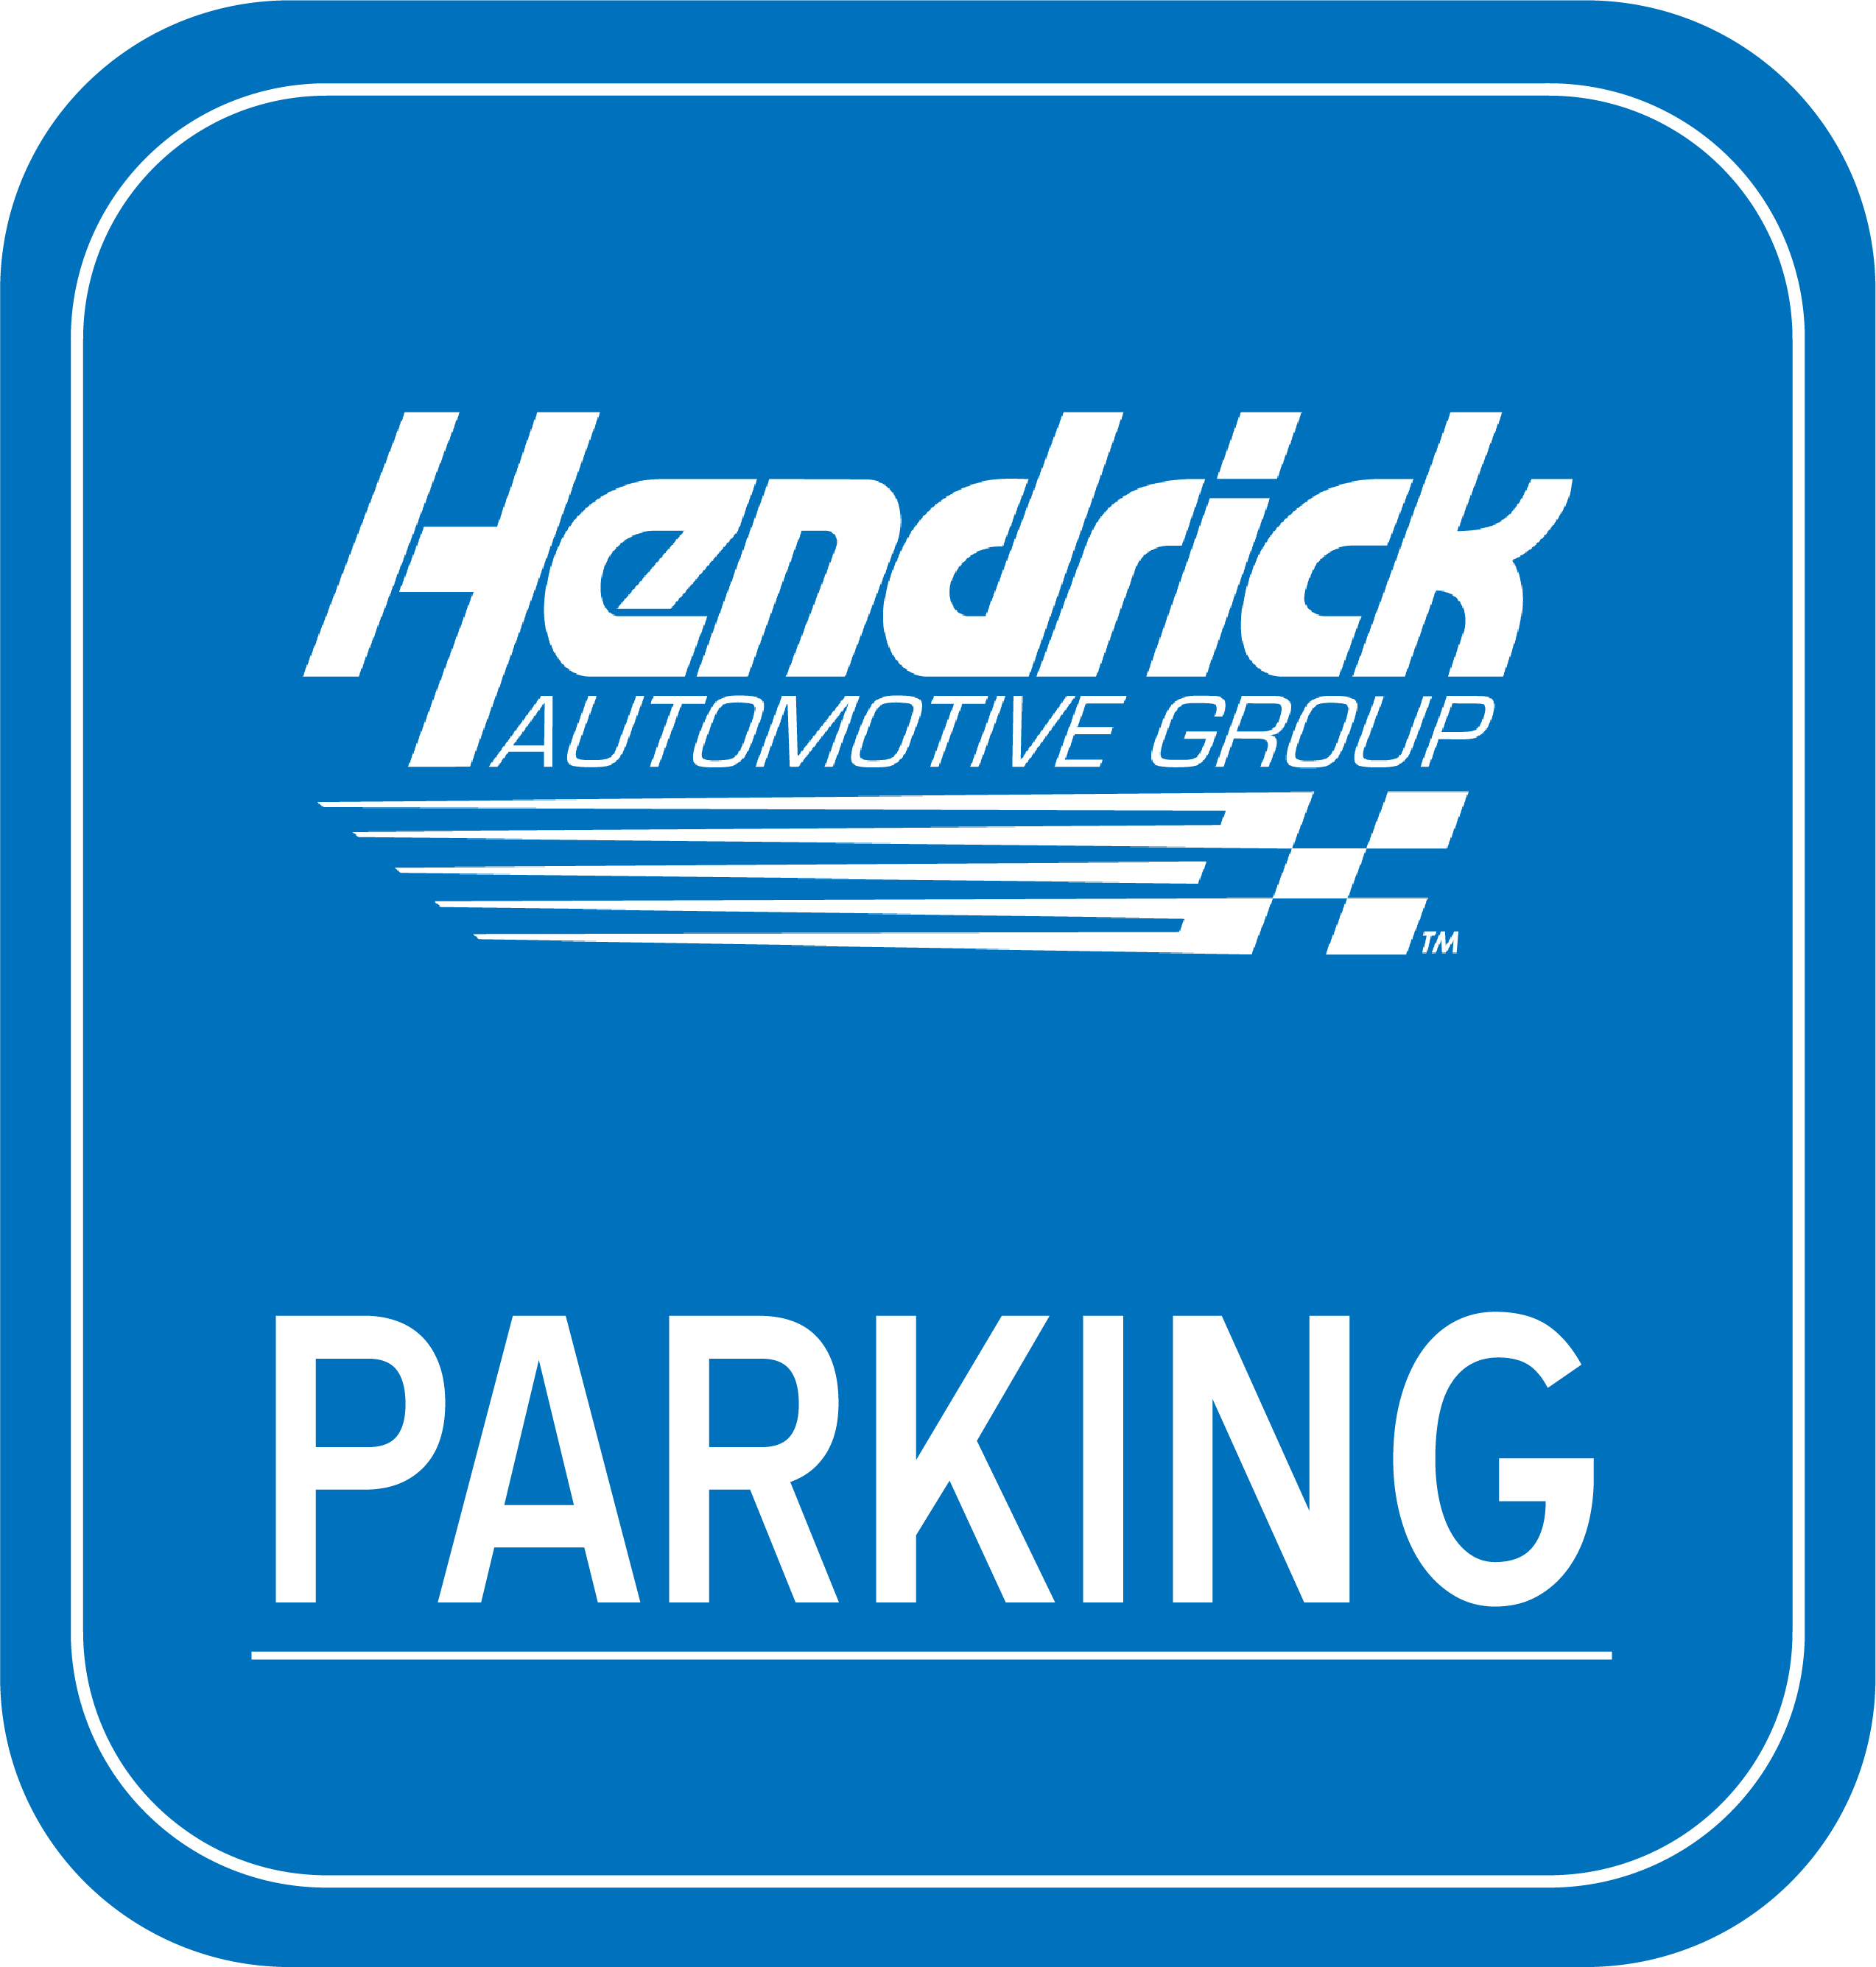 Parked by Hendrick Automotive Group